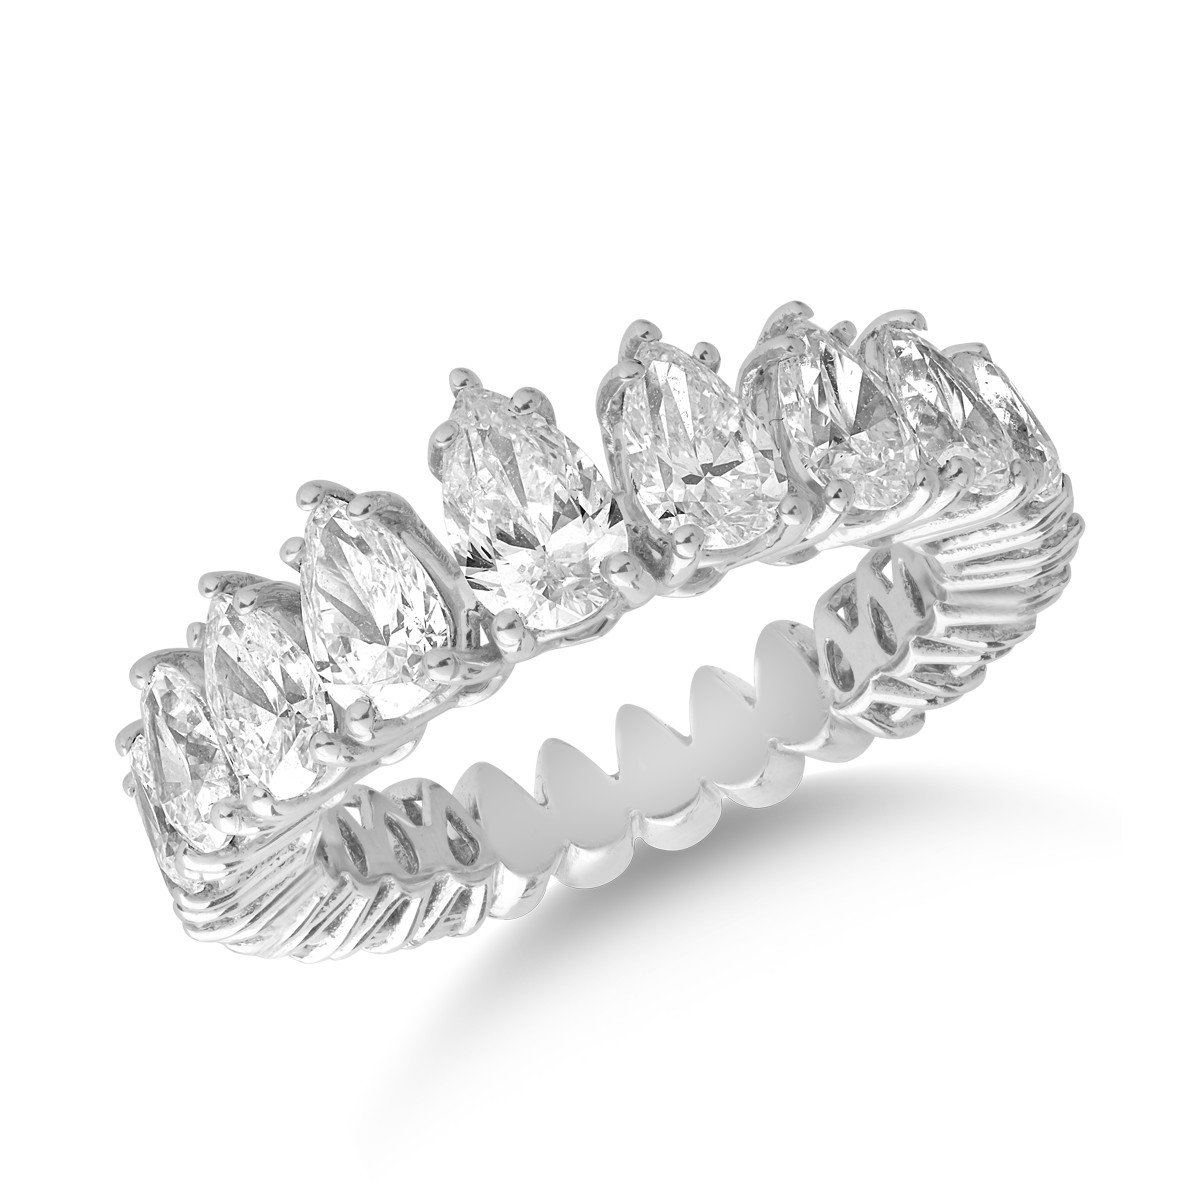 18 karátos fehérarany gyűrű 3.02 karátos gyémántokkal